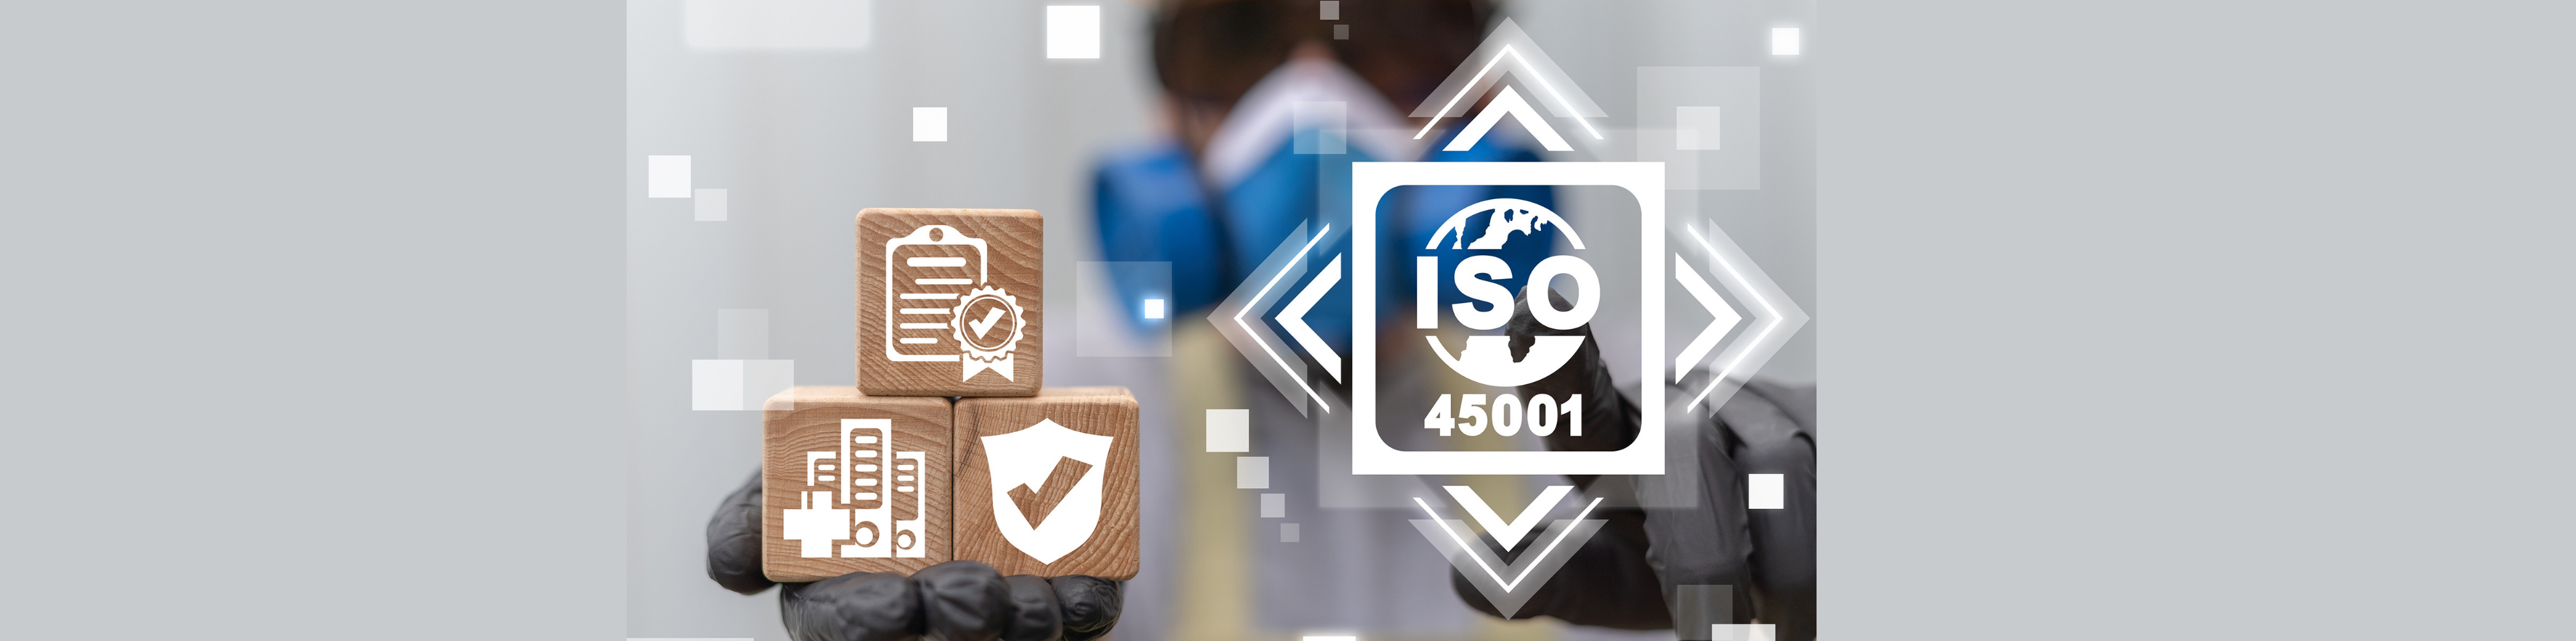 Les certifications VCA et ISO 45001 imposent des exigences supplémentaires lors des audits